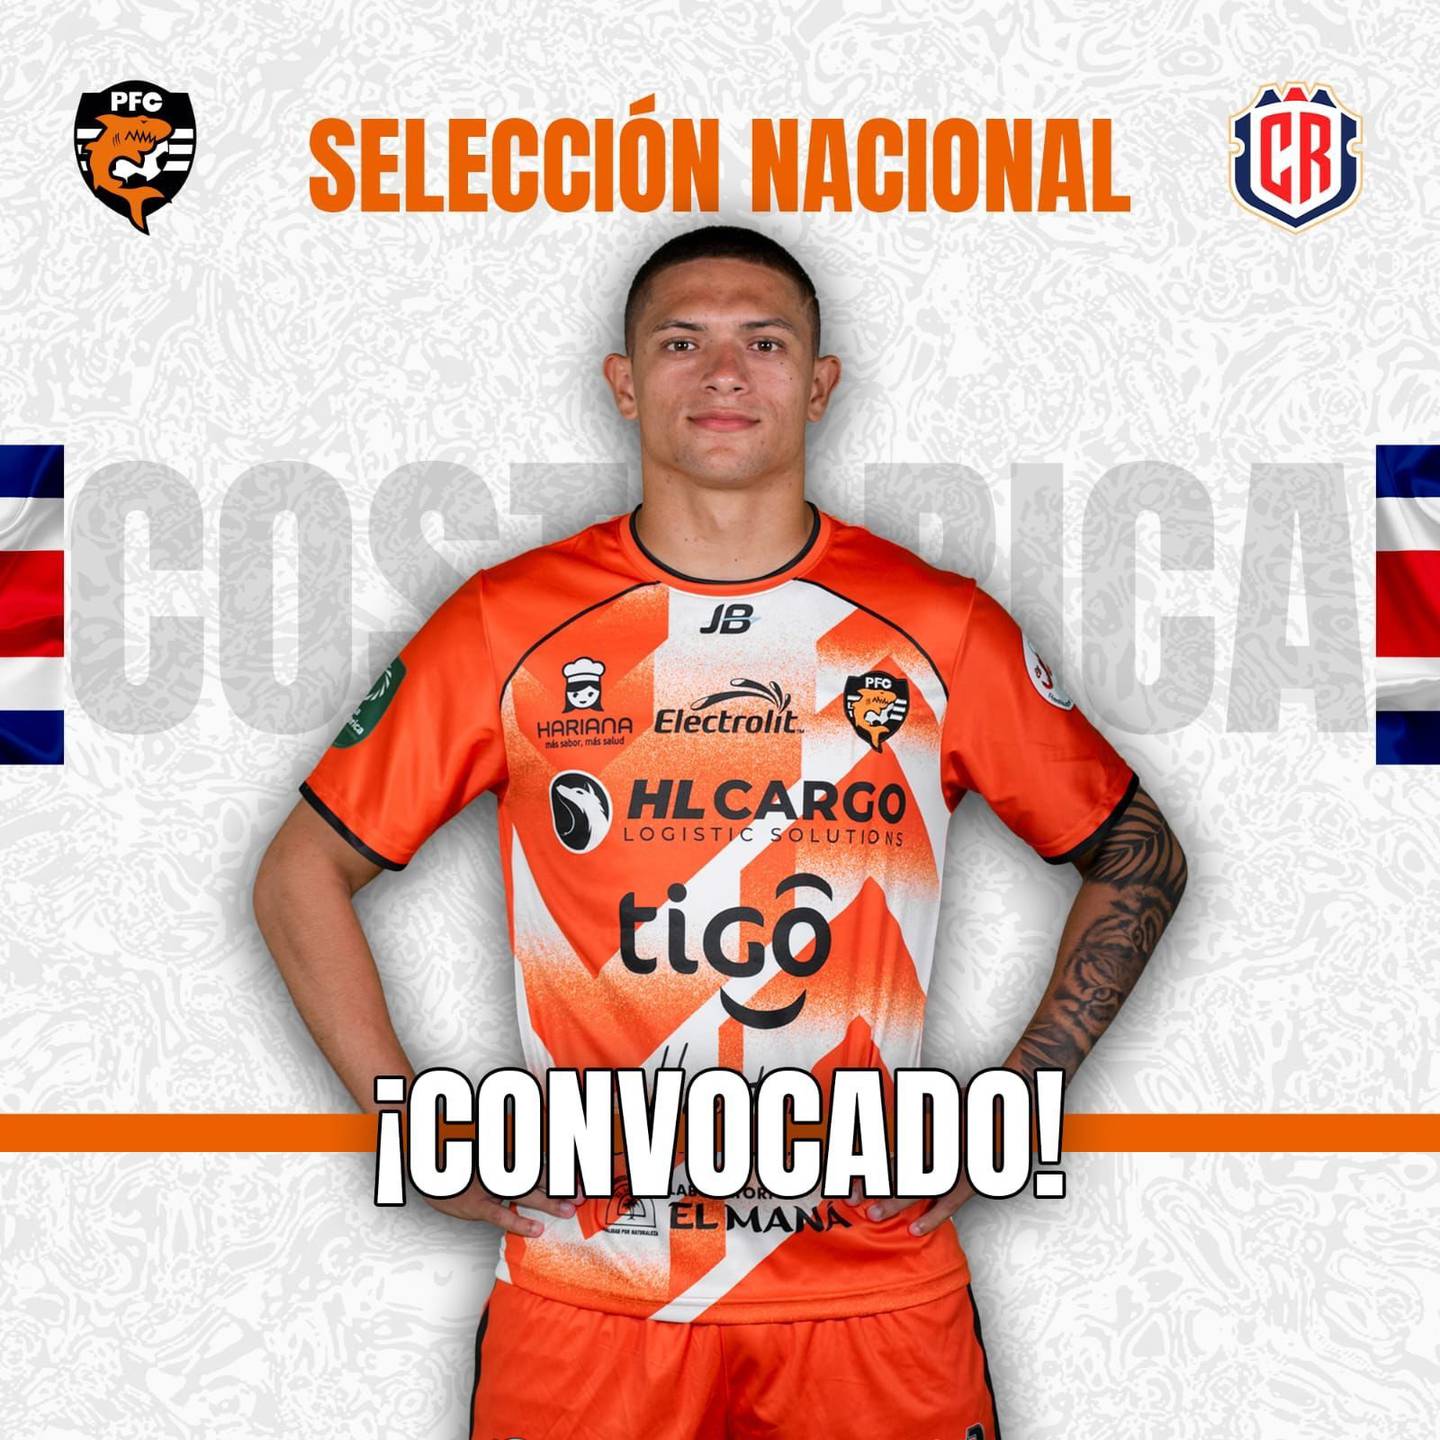 El jugador del Puntarenas, Anthony Hernández también fue convocado. Prensa PFC.